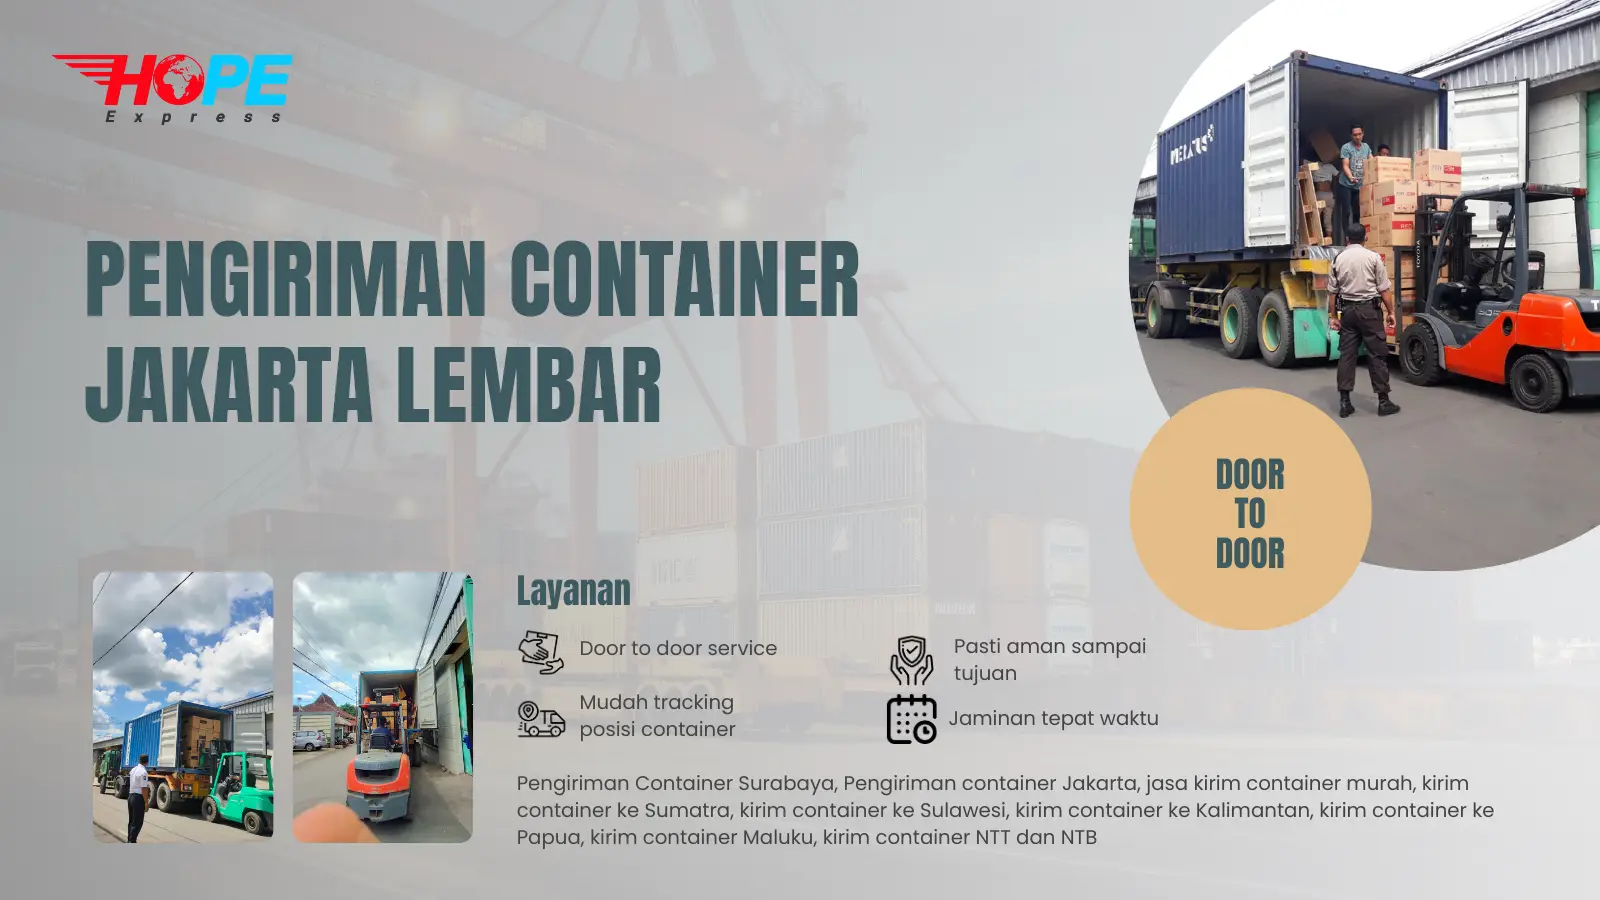 Pengiriman Container Jakarta Lembar